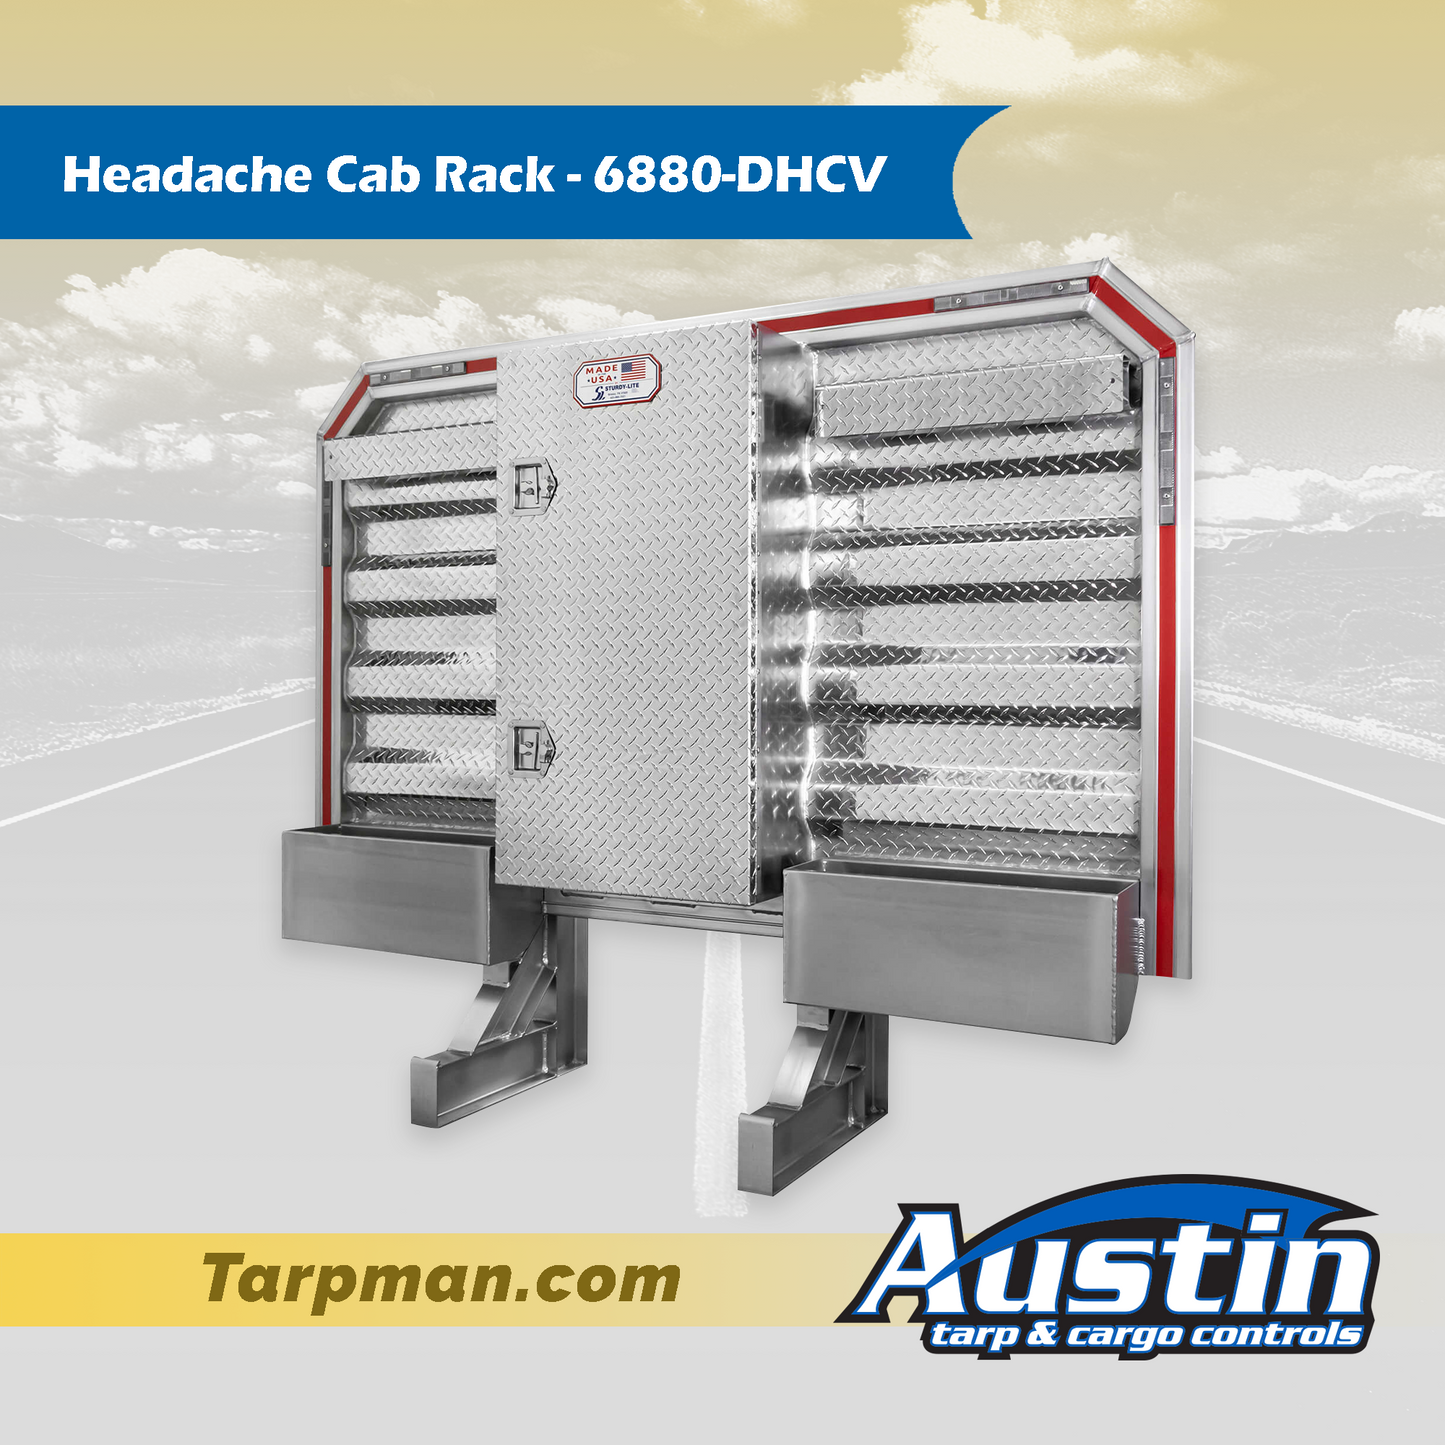 Headache Cab Rack - 6880-DHCV